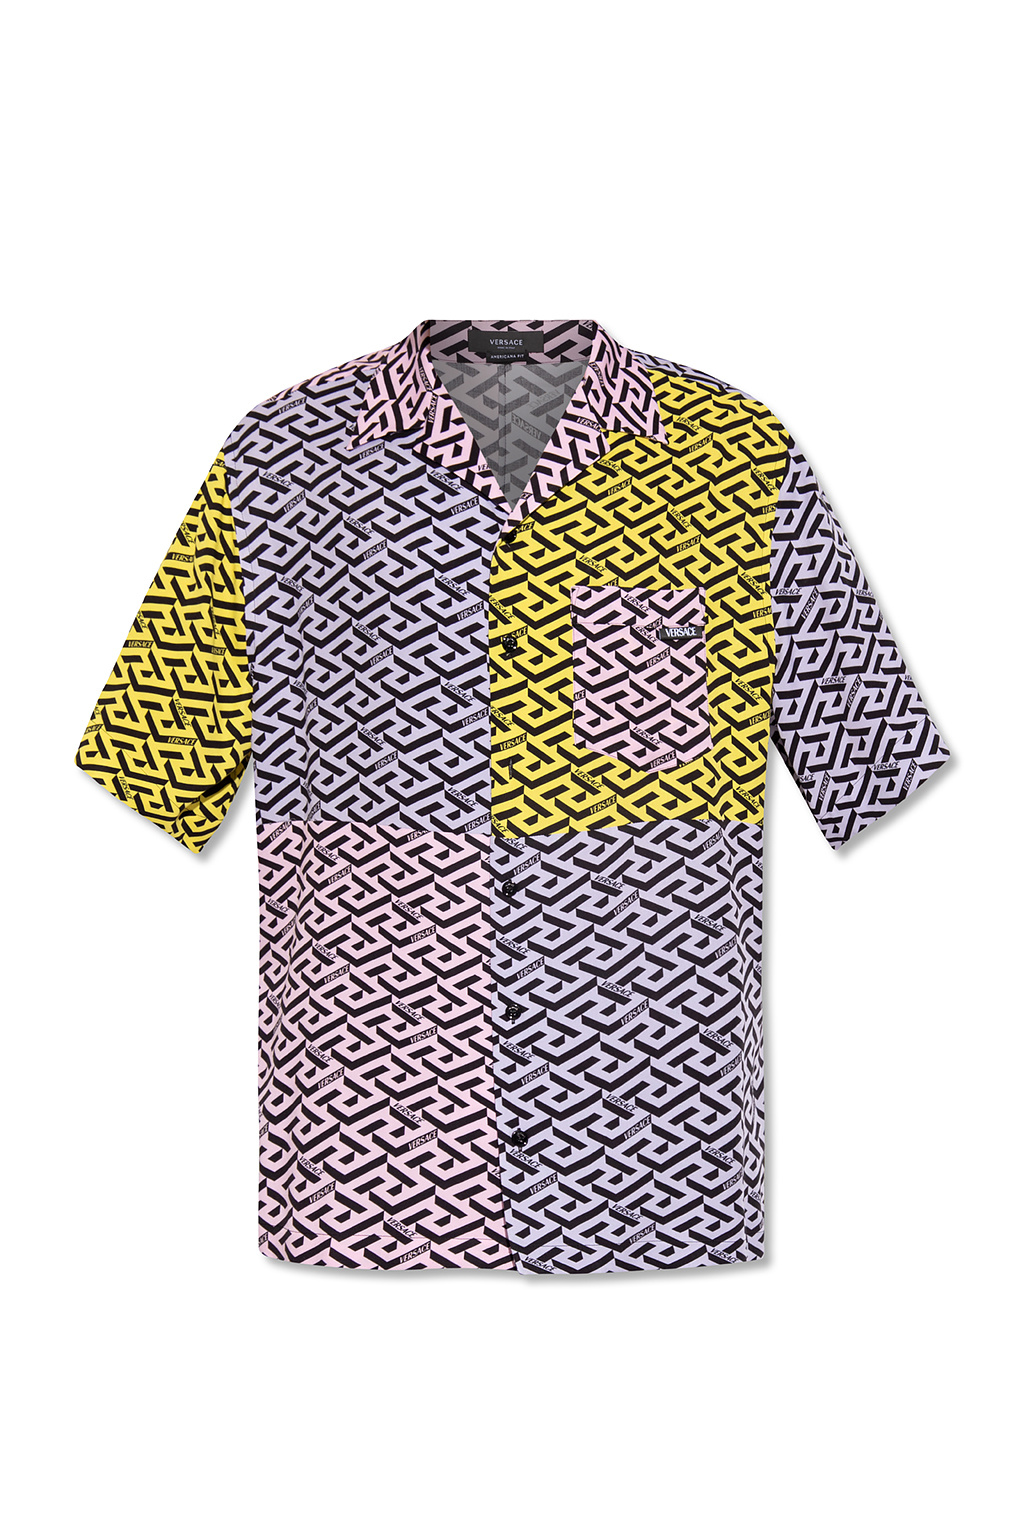 Versace Sweater shirt with ‘La Greca’ pattern